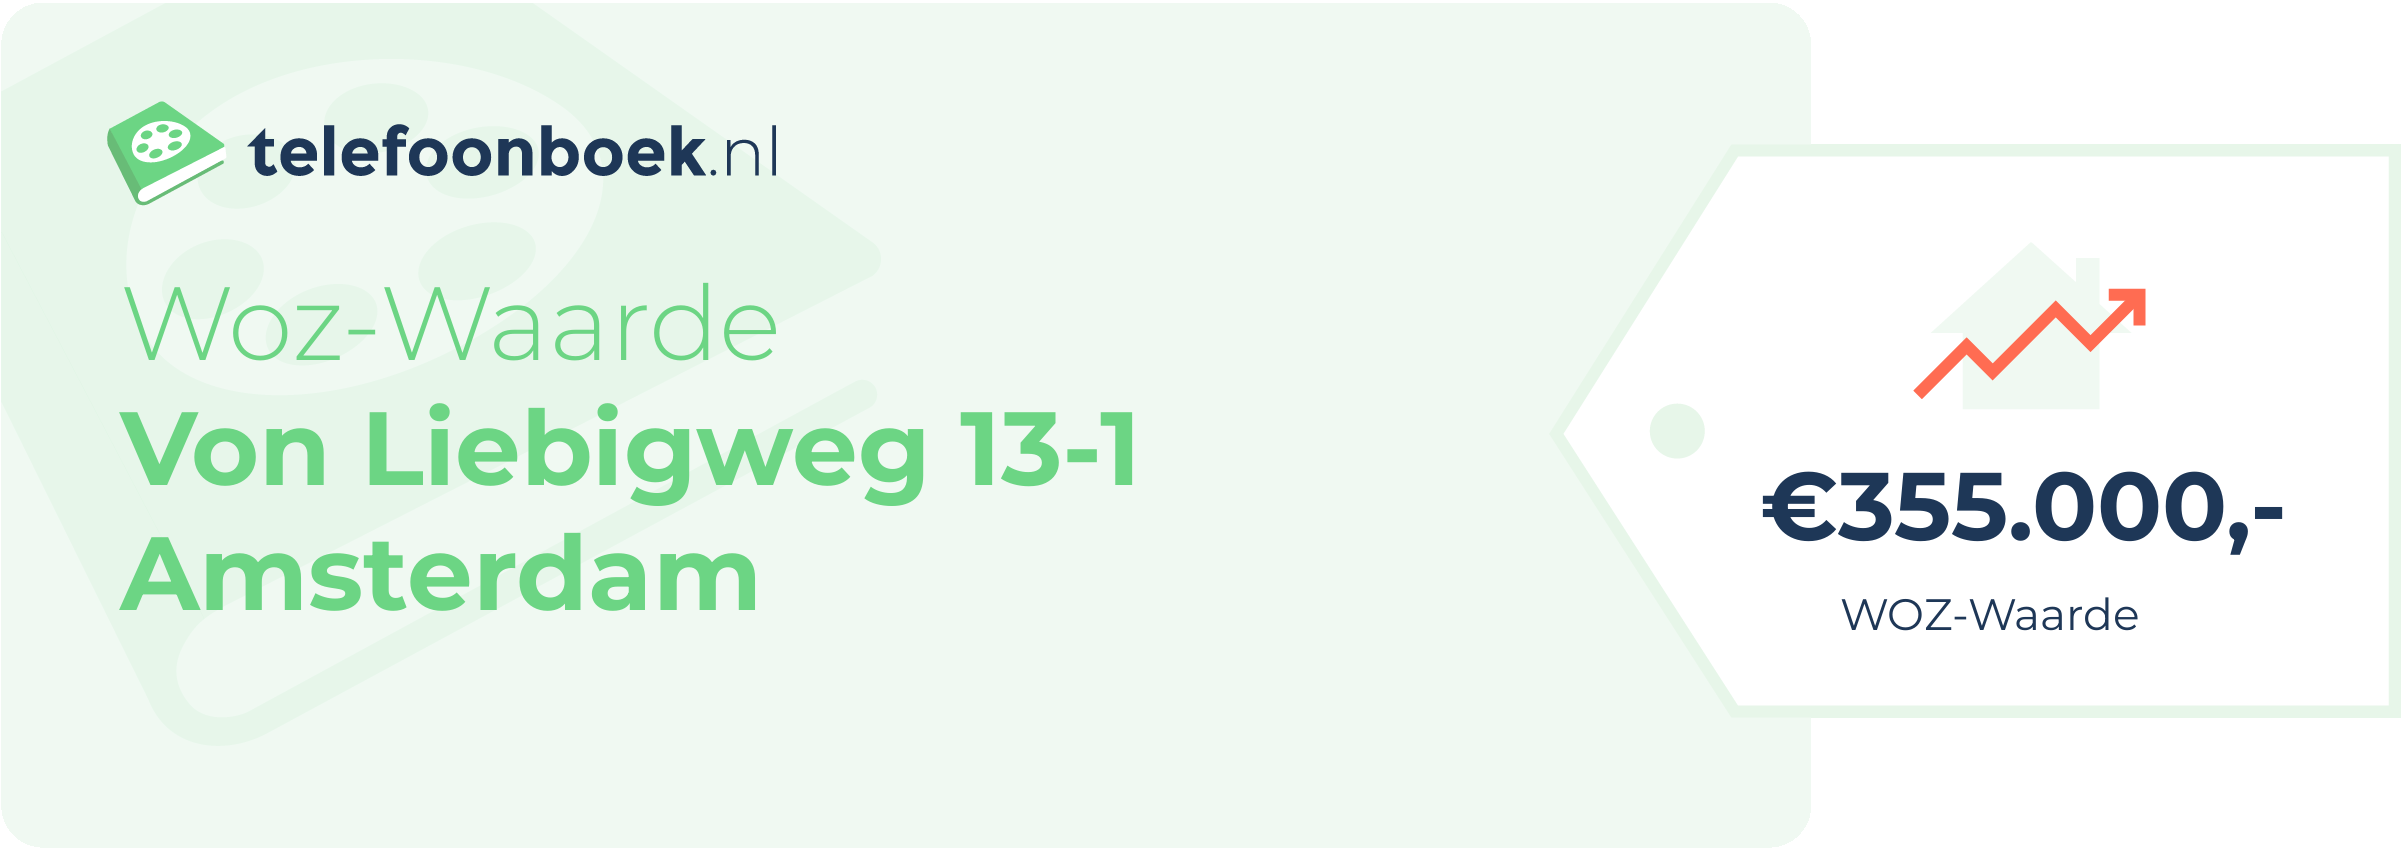 WOZ-waarde Von Liebigweg 13-1 Amsterdam